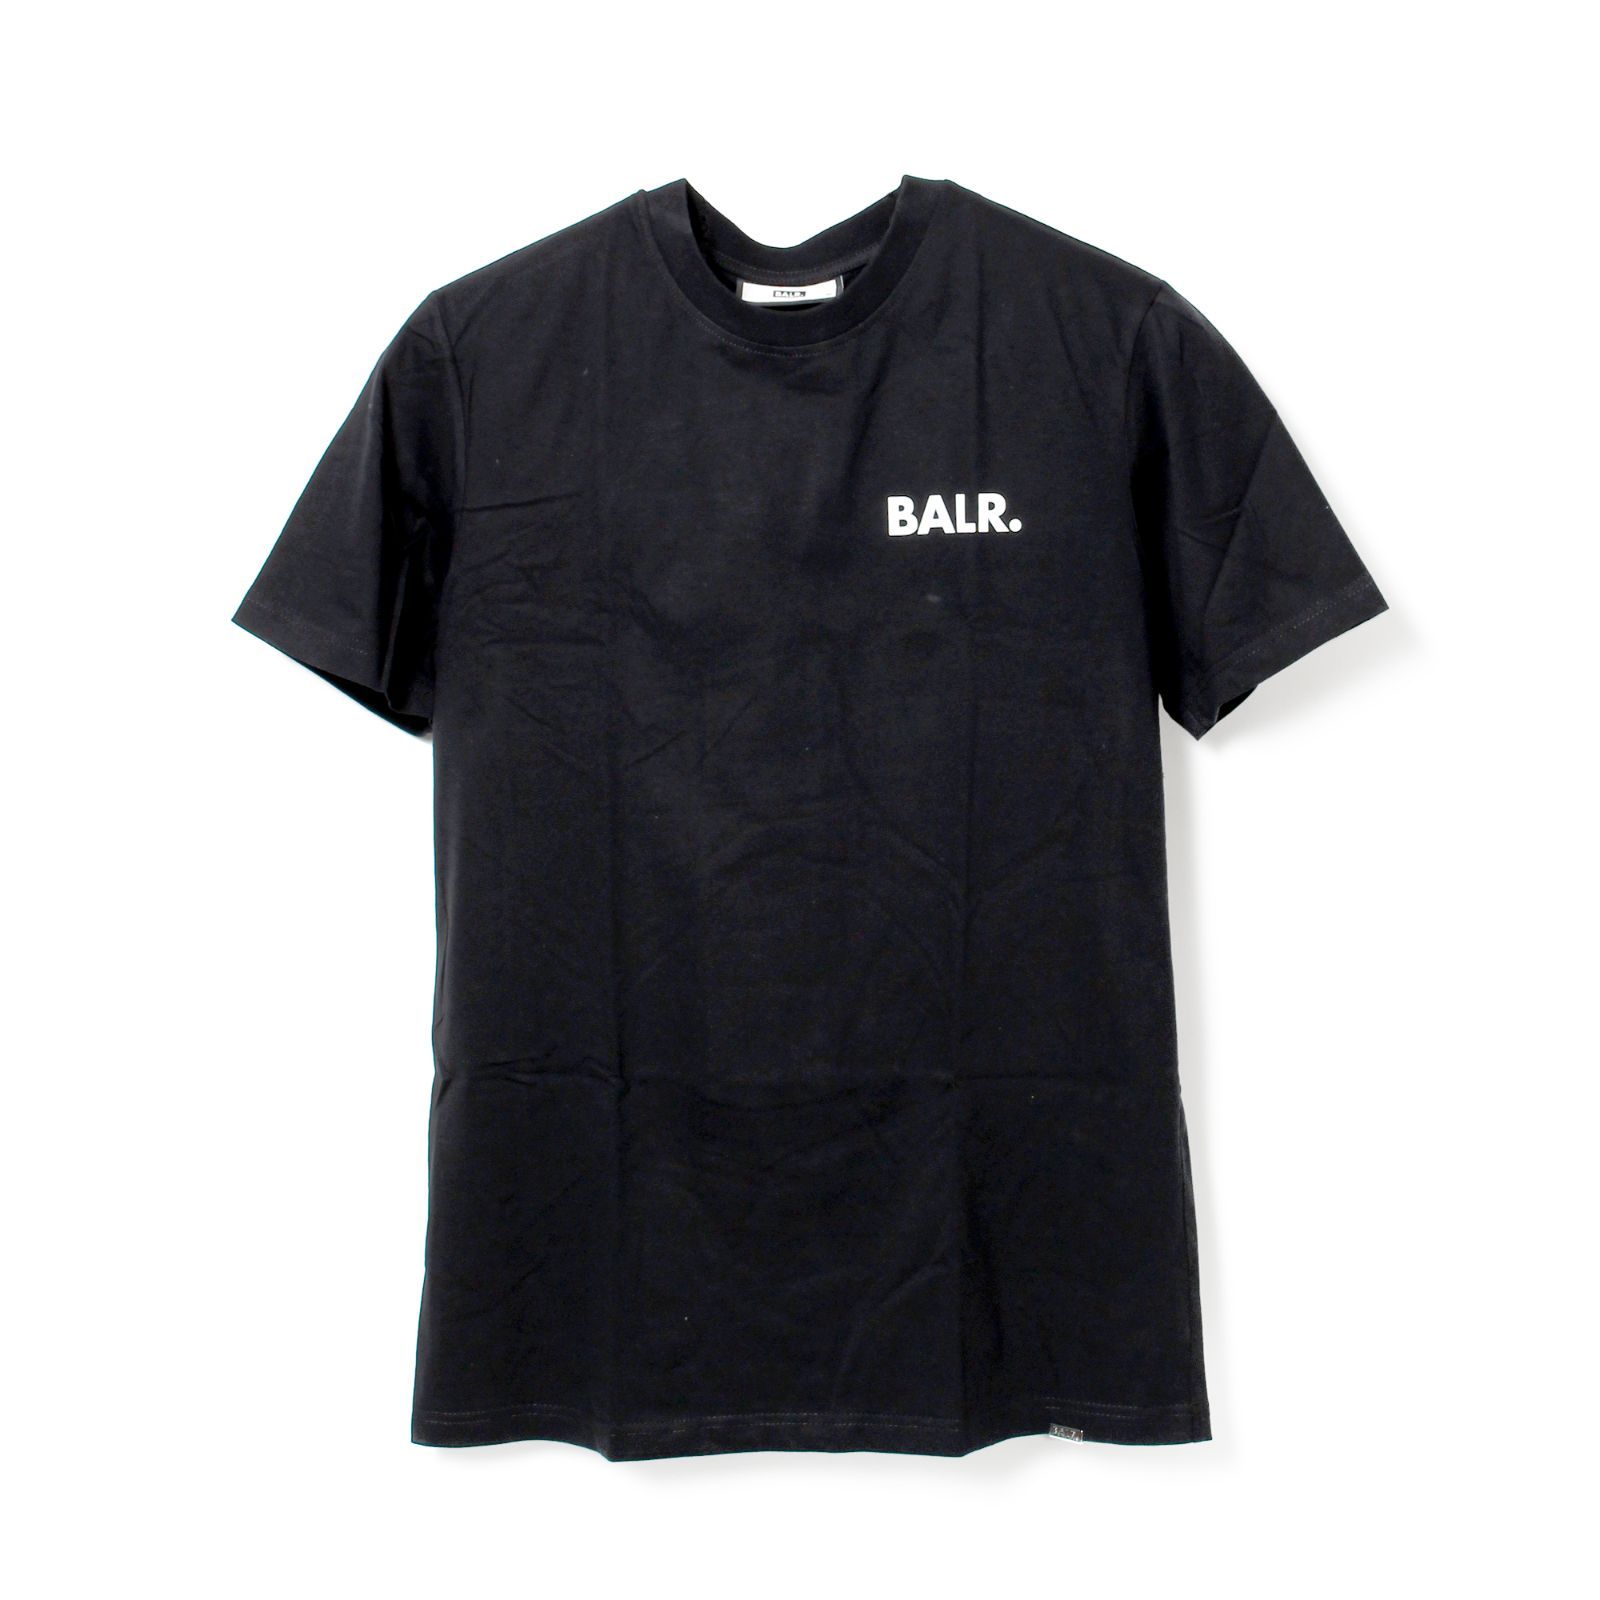 【新品未使用】 BALR. ボーラー OLAF STRAIGHT GRAFFITI T-SHIRT Tシャツ 半袖 カットソー コットン B11121170 【Sサイズ/JET BLACK】